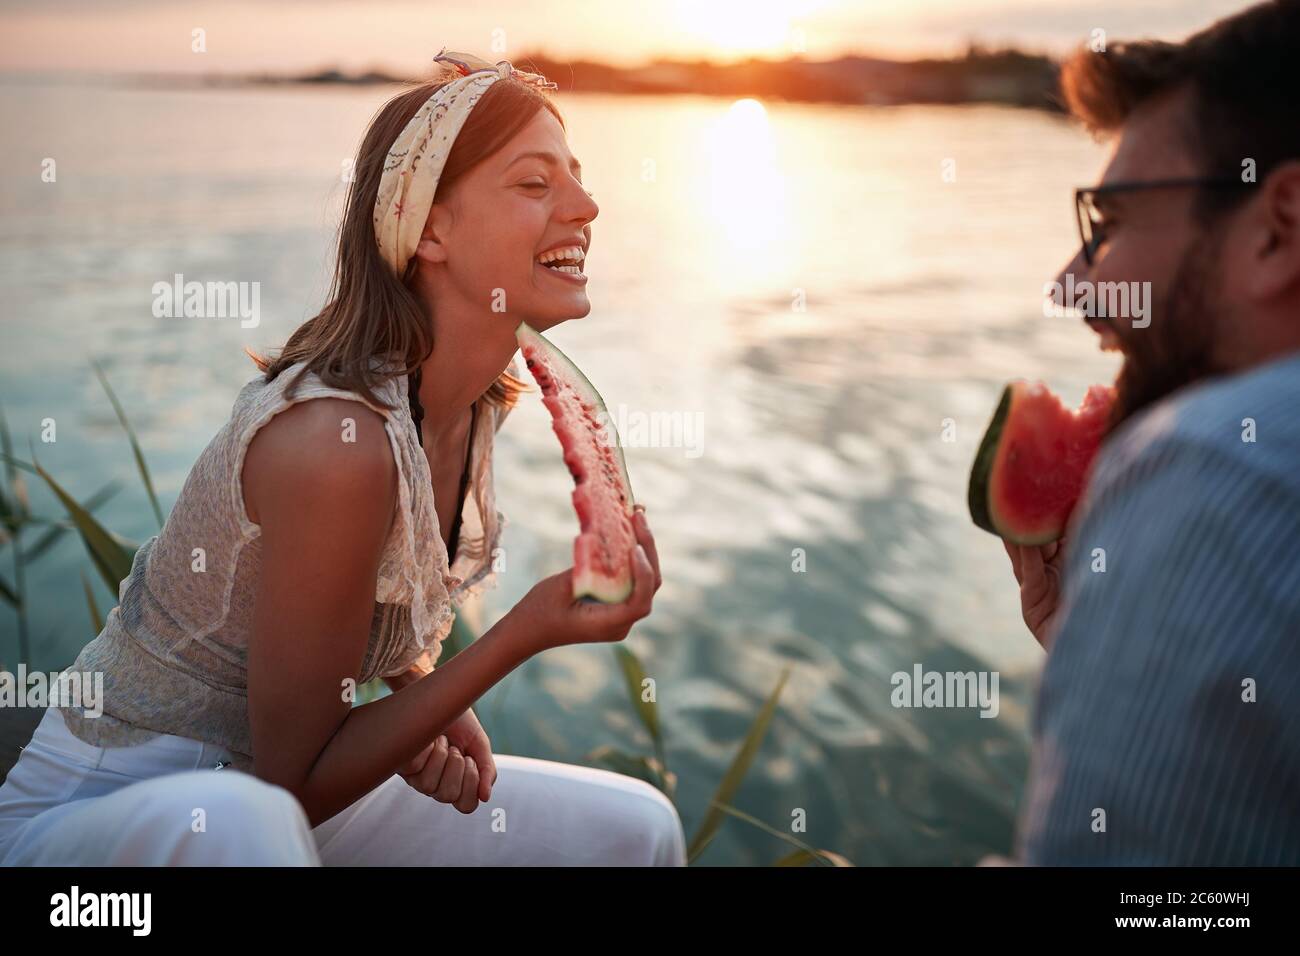 jeune couple mangeant de la pastèque, assis près de l'eau, souriant, riant, parlant Banque D'Images